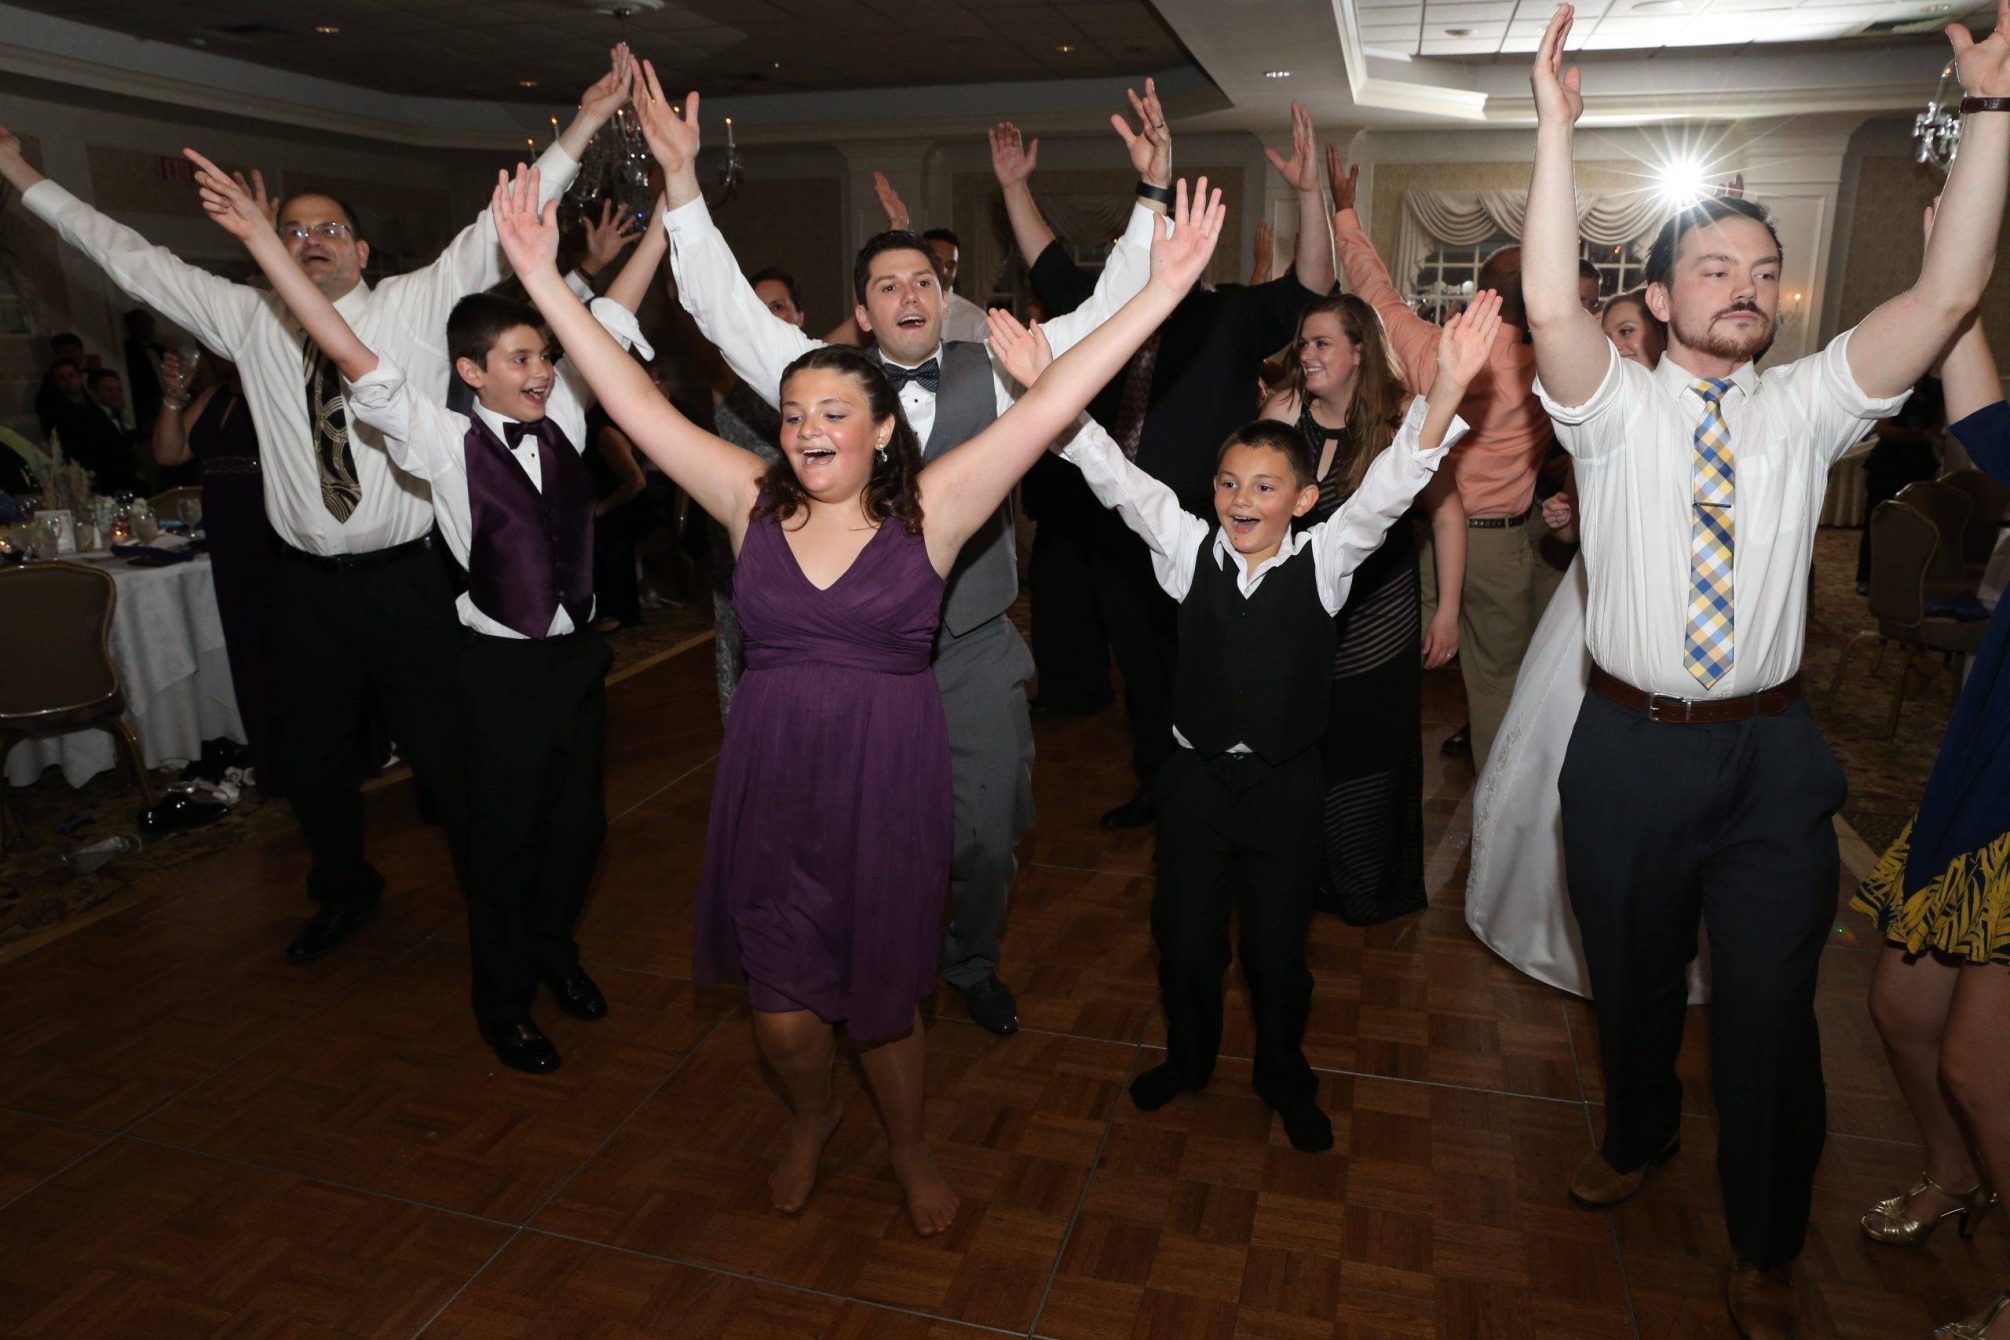 Bridgewater Manor wedding guests dancing